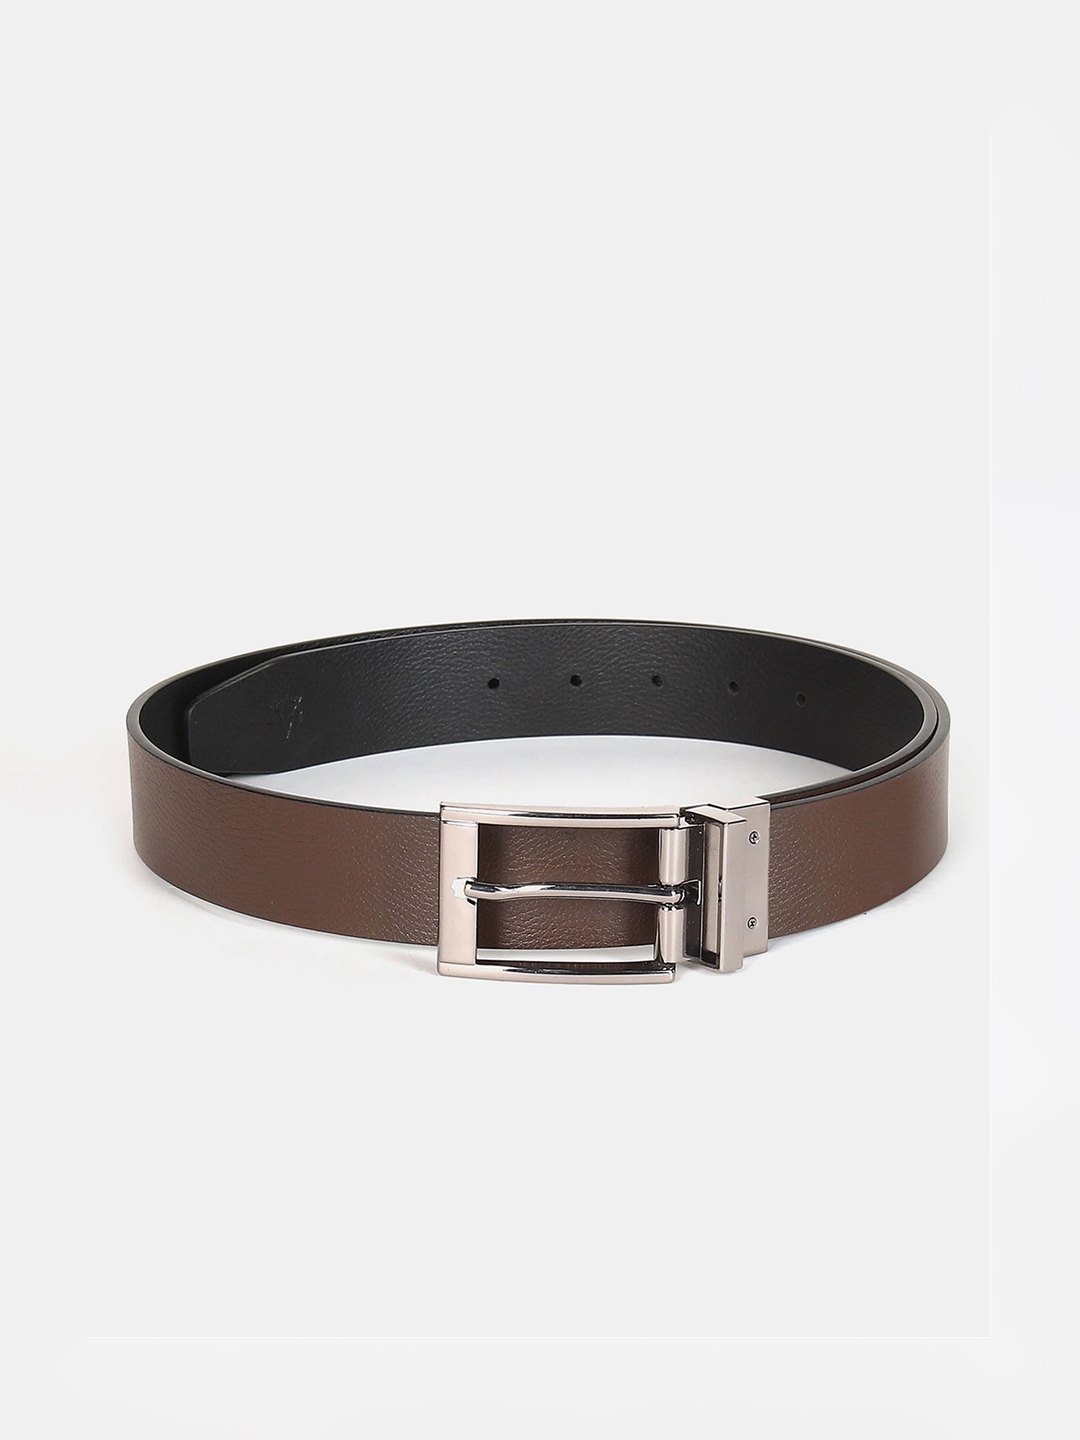 Buy Arrow Men Brown Leather Belt - Belts for Men 19134972 | Myntra